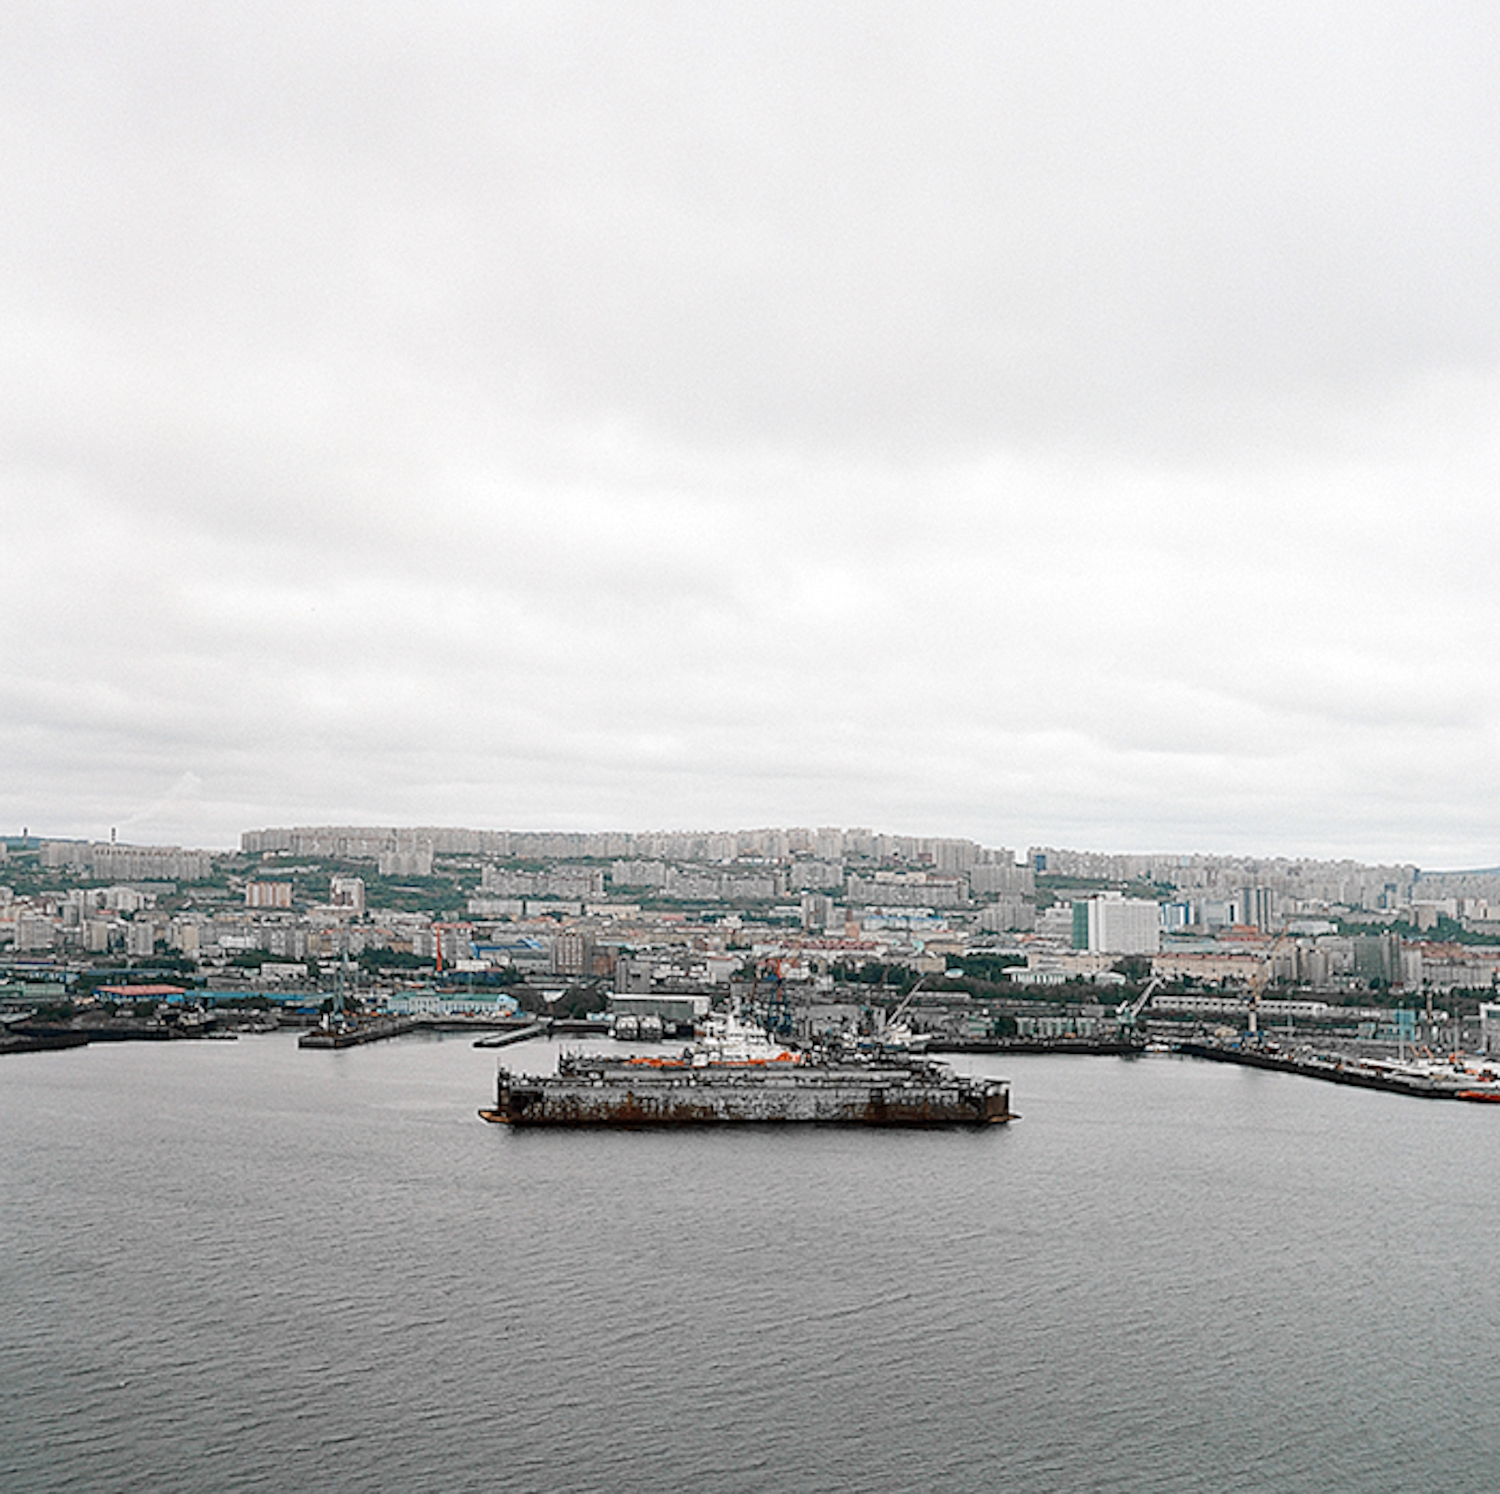 Cette série de photographies fait partie d’un projet spécial sur la Russie réalisé par trois femmes photographes moscovites qui forment le groupe artistique “Troïka”. C’est le premier projet publié en partenariat avec La Russie d'Aujourd'hui, mais ce n’est, sans doute, pas le dernier. Commençons par Mourmansk. Mourmansk se trouve à 1950 km au nord de Moscou, dans la baie de Kola, dans la mer de Barents. Voici une vue de la ville depuis le sommet du mont Abram-Mys.